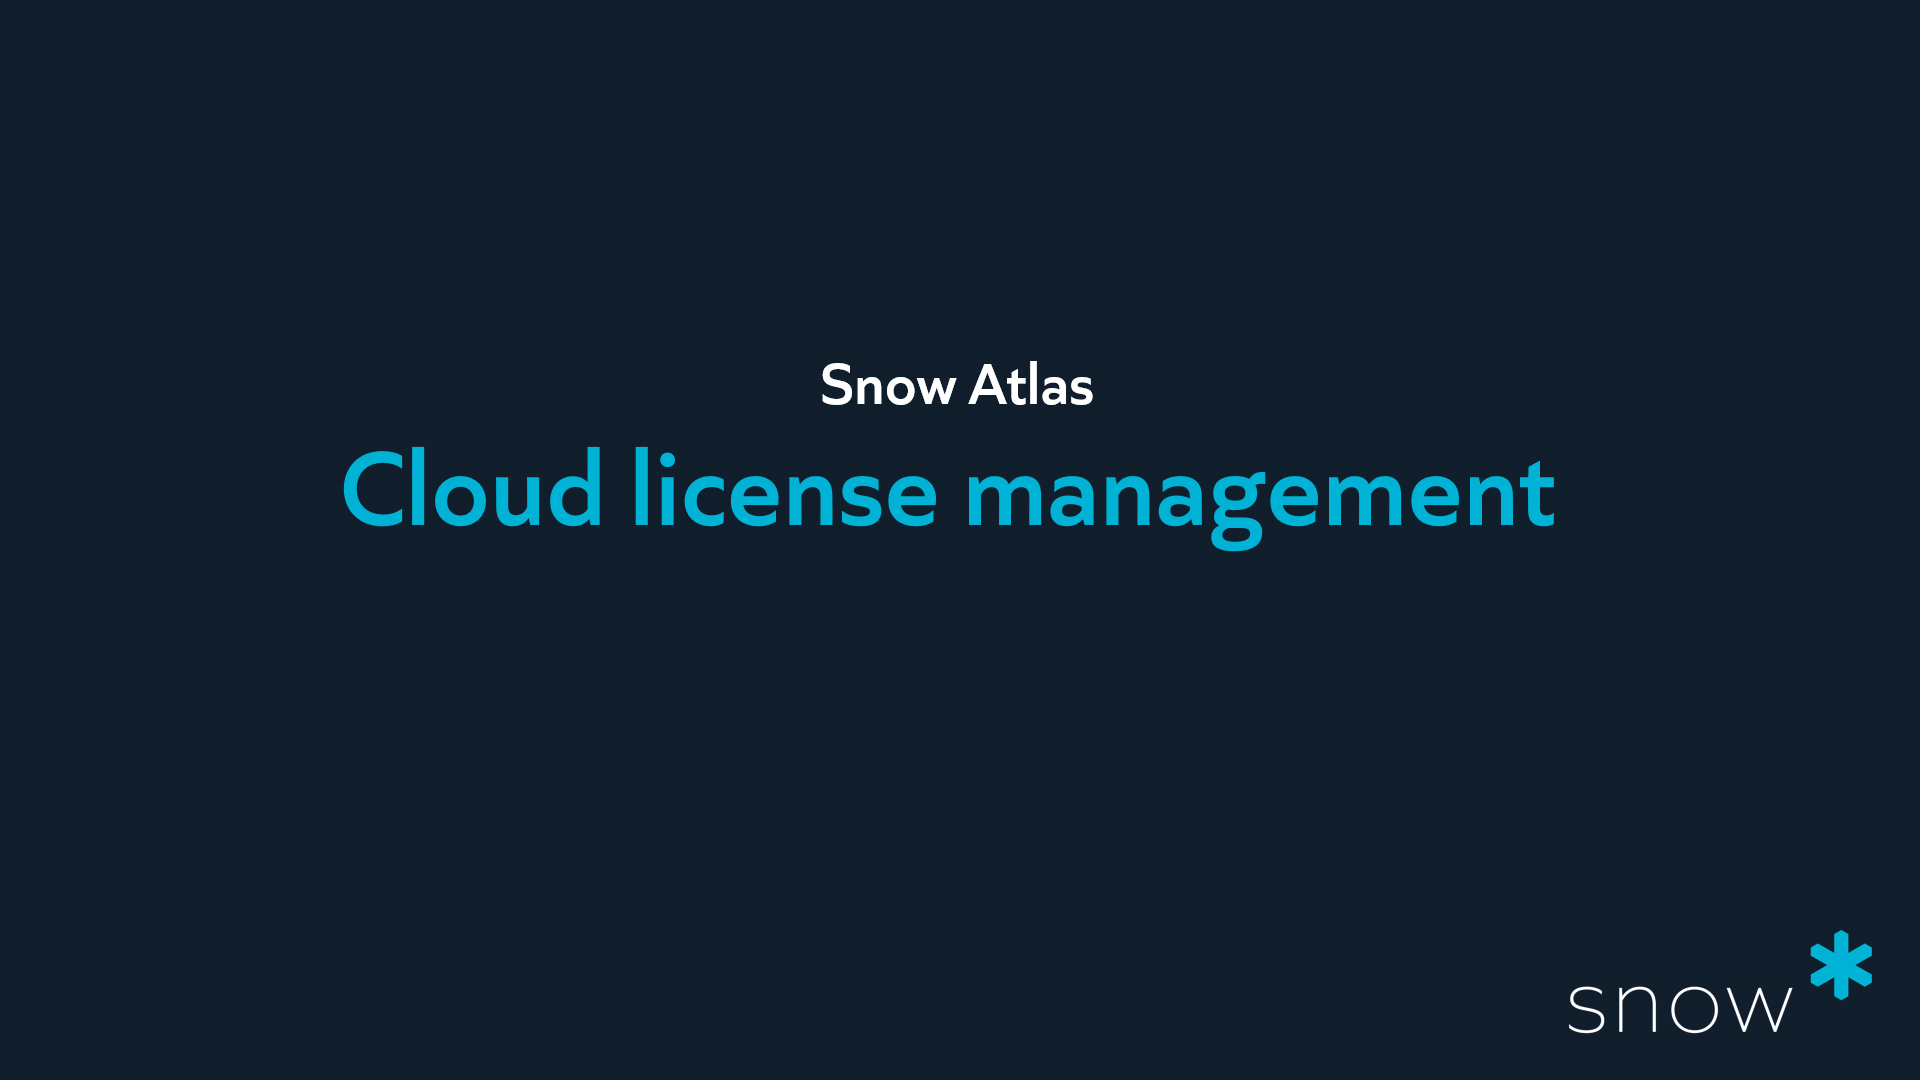 Cloud license management